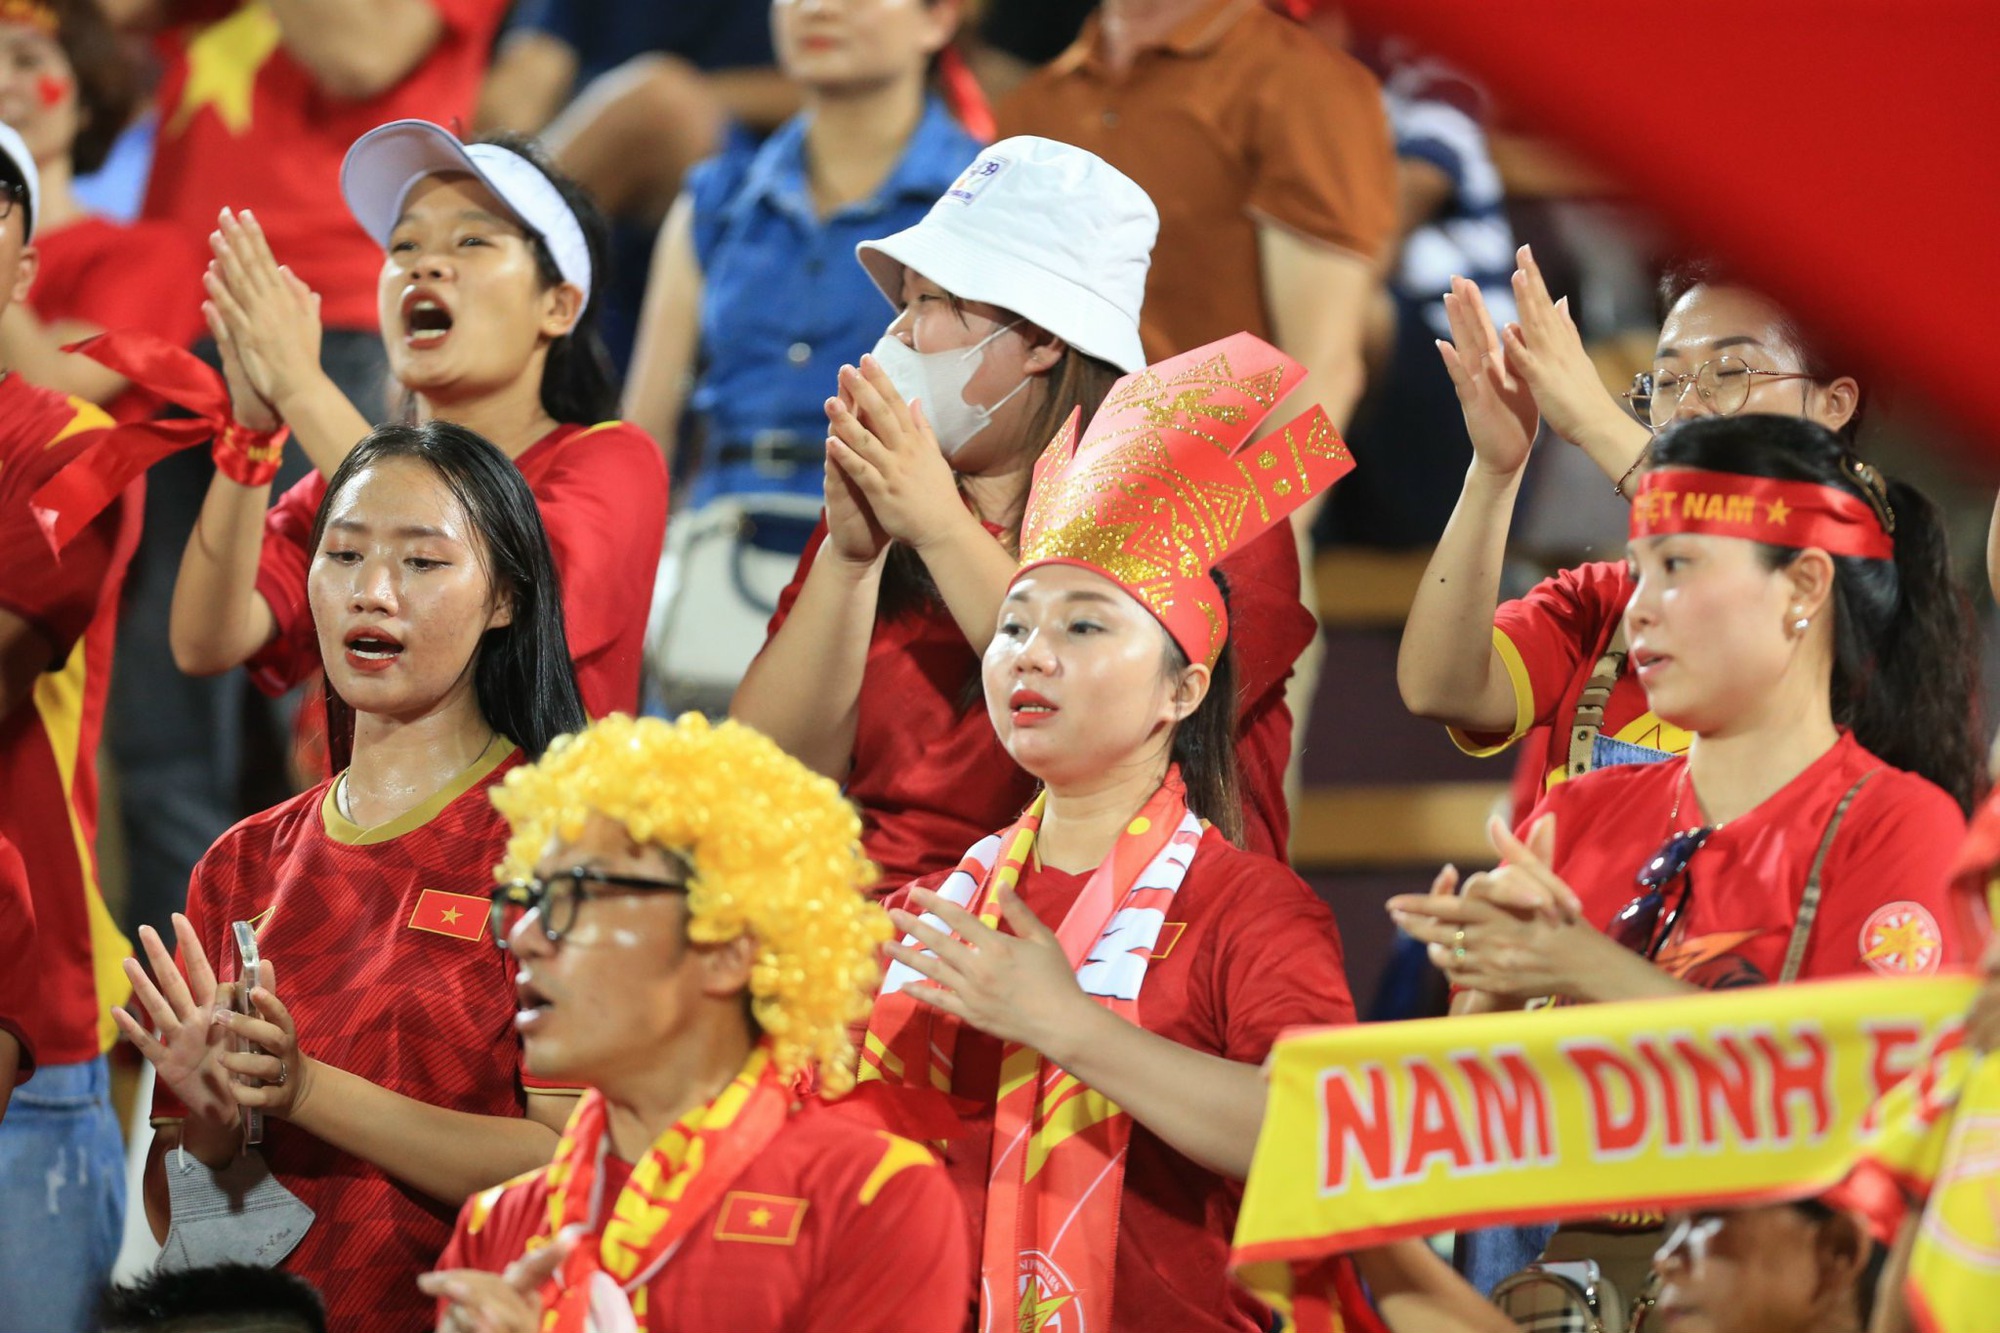 Hàng ngàn người hâm mộ đội mưa cổ vũ U23 Việt Nam thi đấu ở U23 châu Á - Ảnh 5.